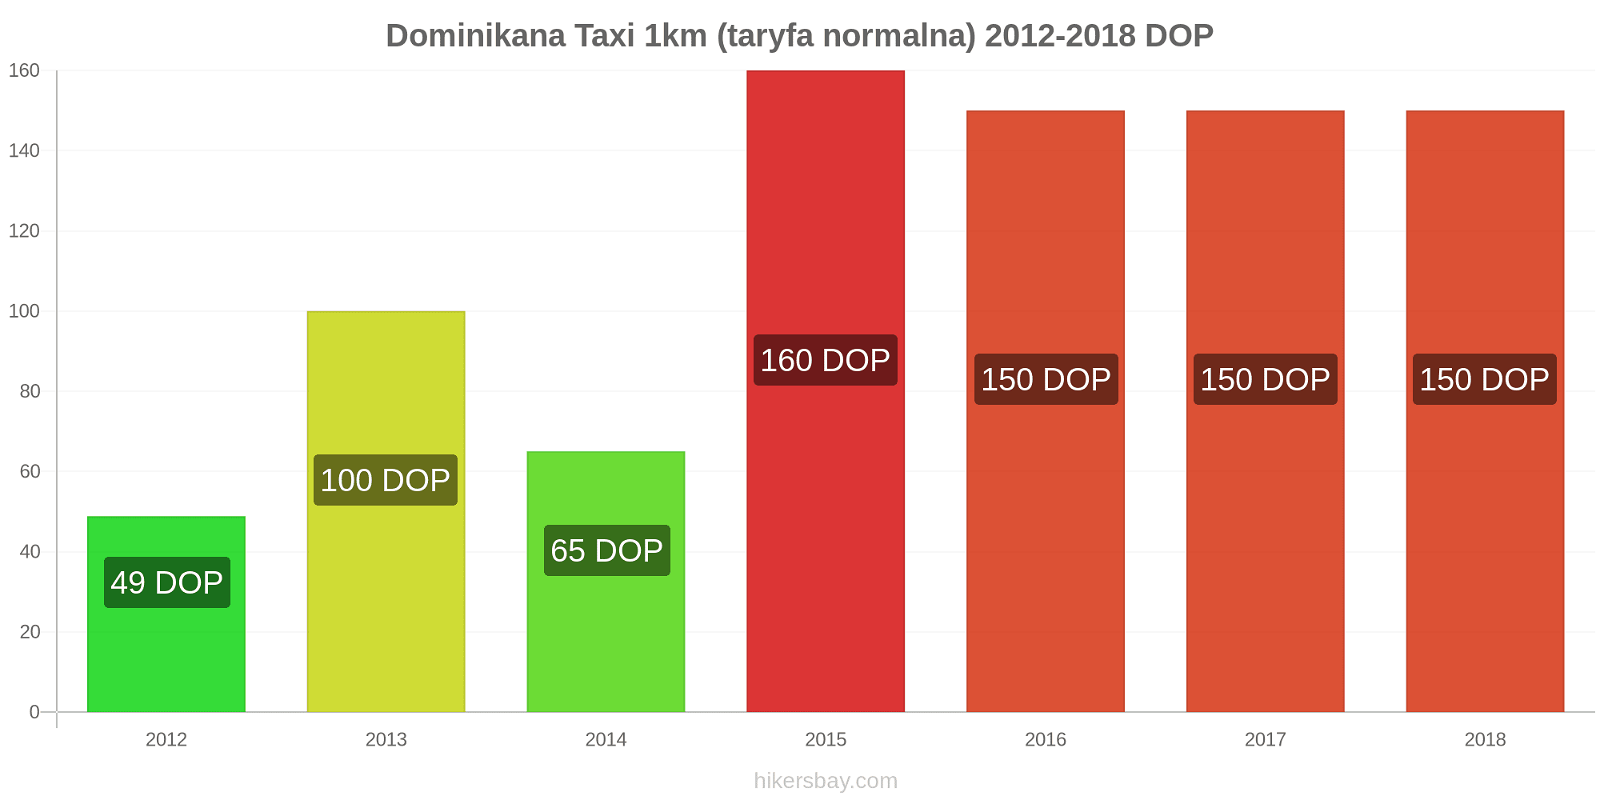 Dominikana zmiany cen Taxi 1km (taryfa normalna) hikersbay.com